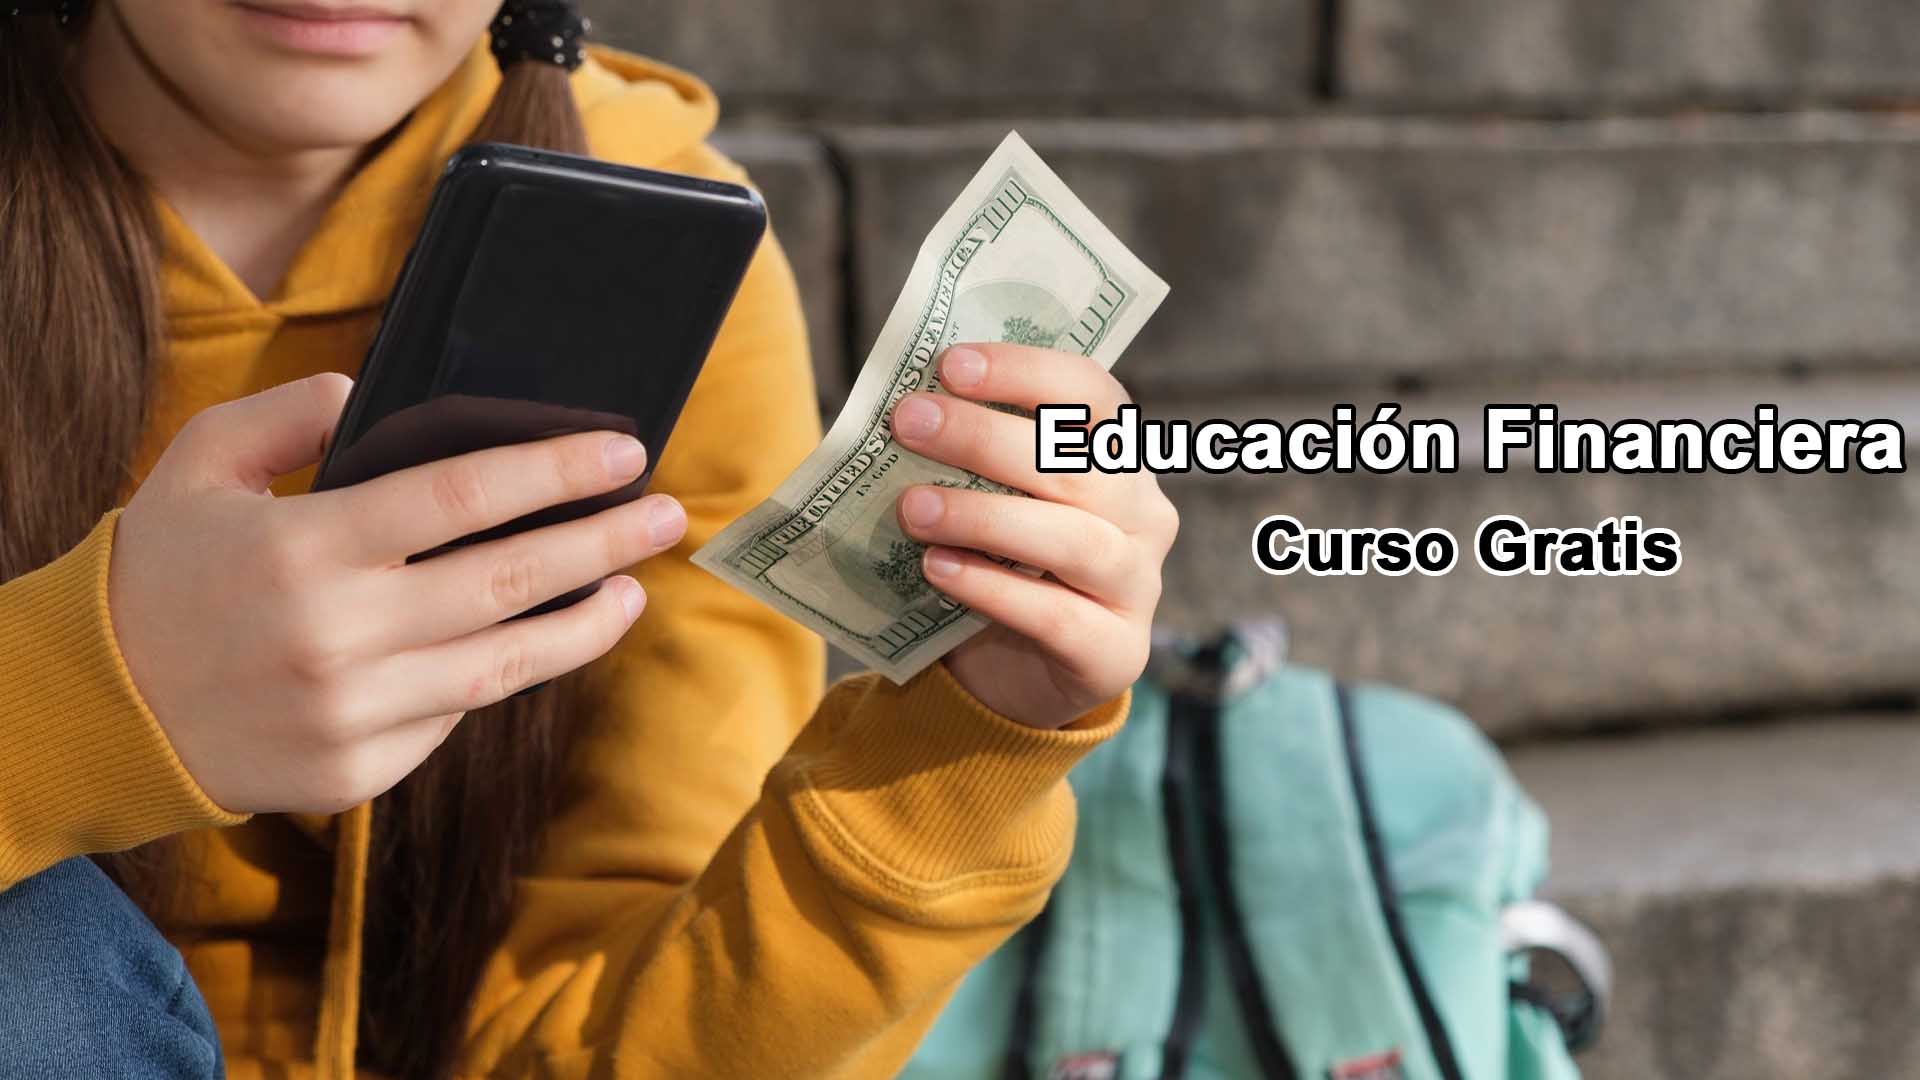 La CONDUSEF lanza un curso gratuito de Educación Financiera con certificación Oficial